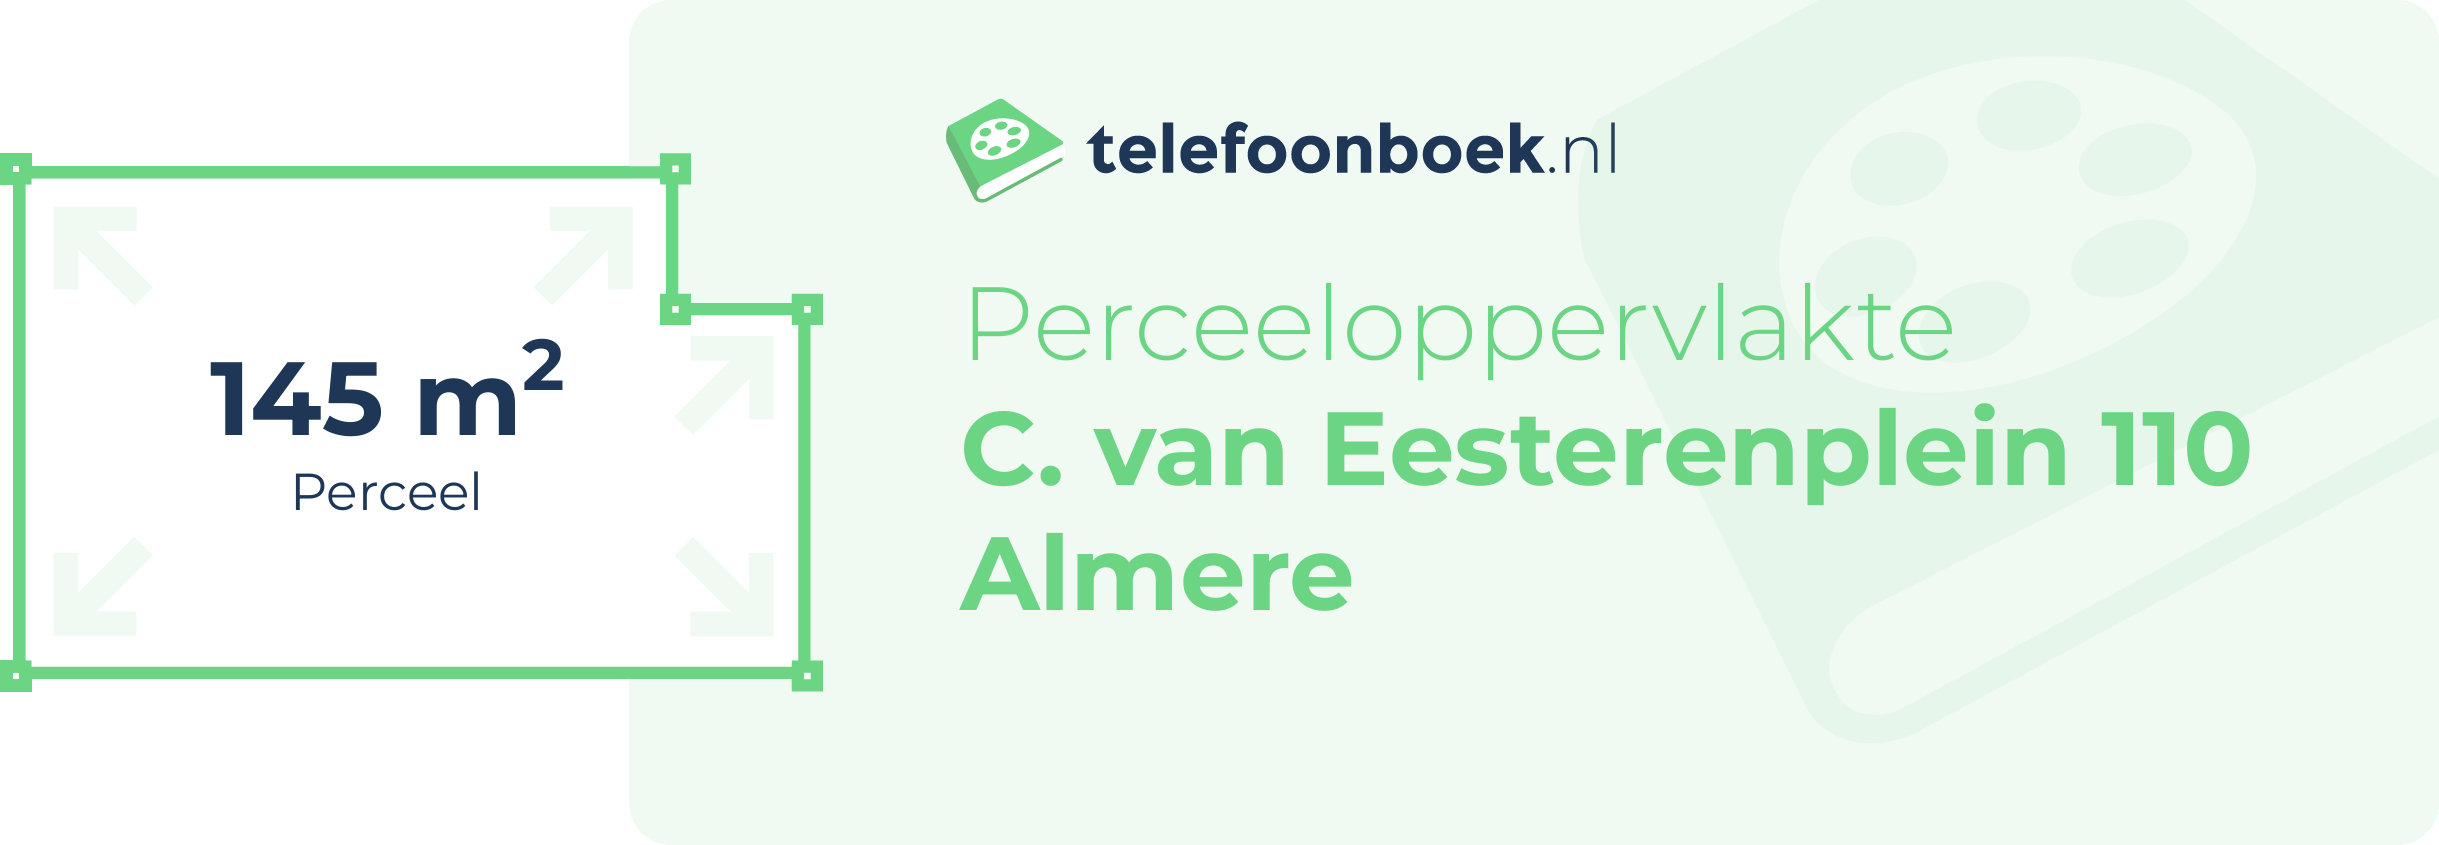 Perceeloppervlakte C. Van Eesterenplein 110 Almere